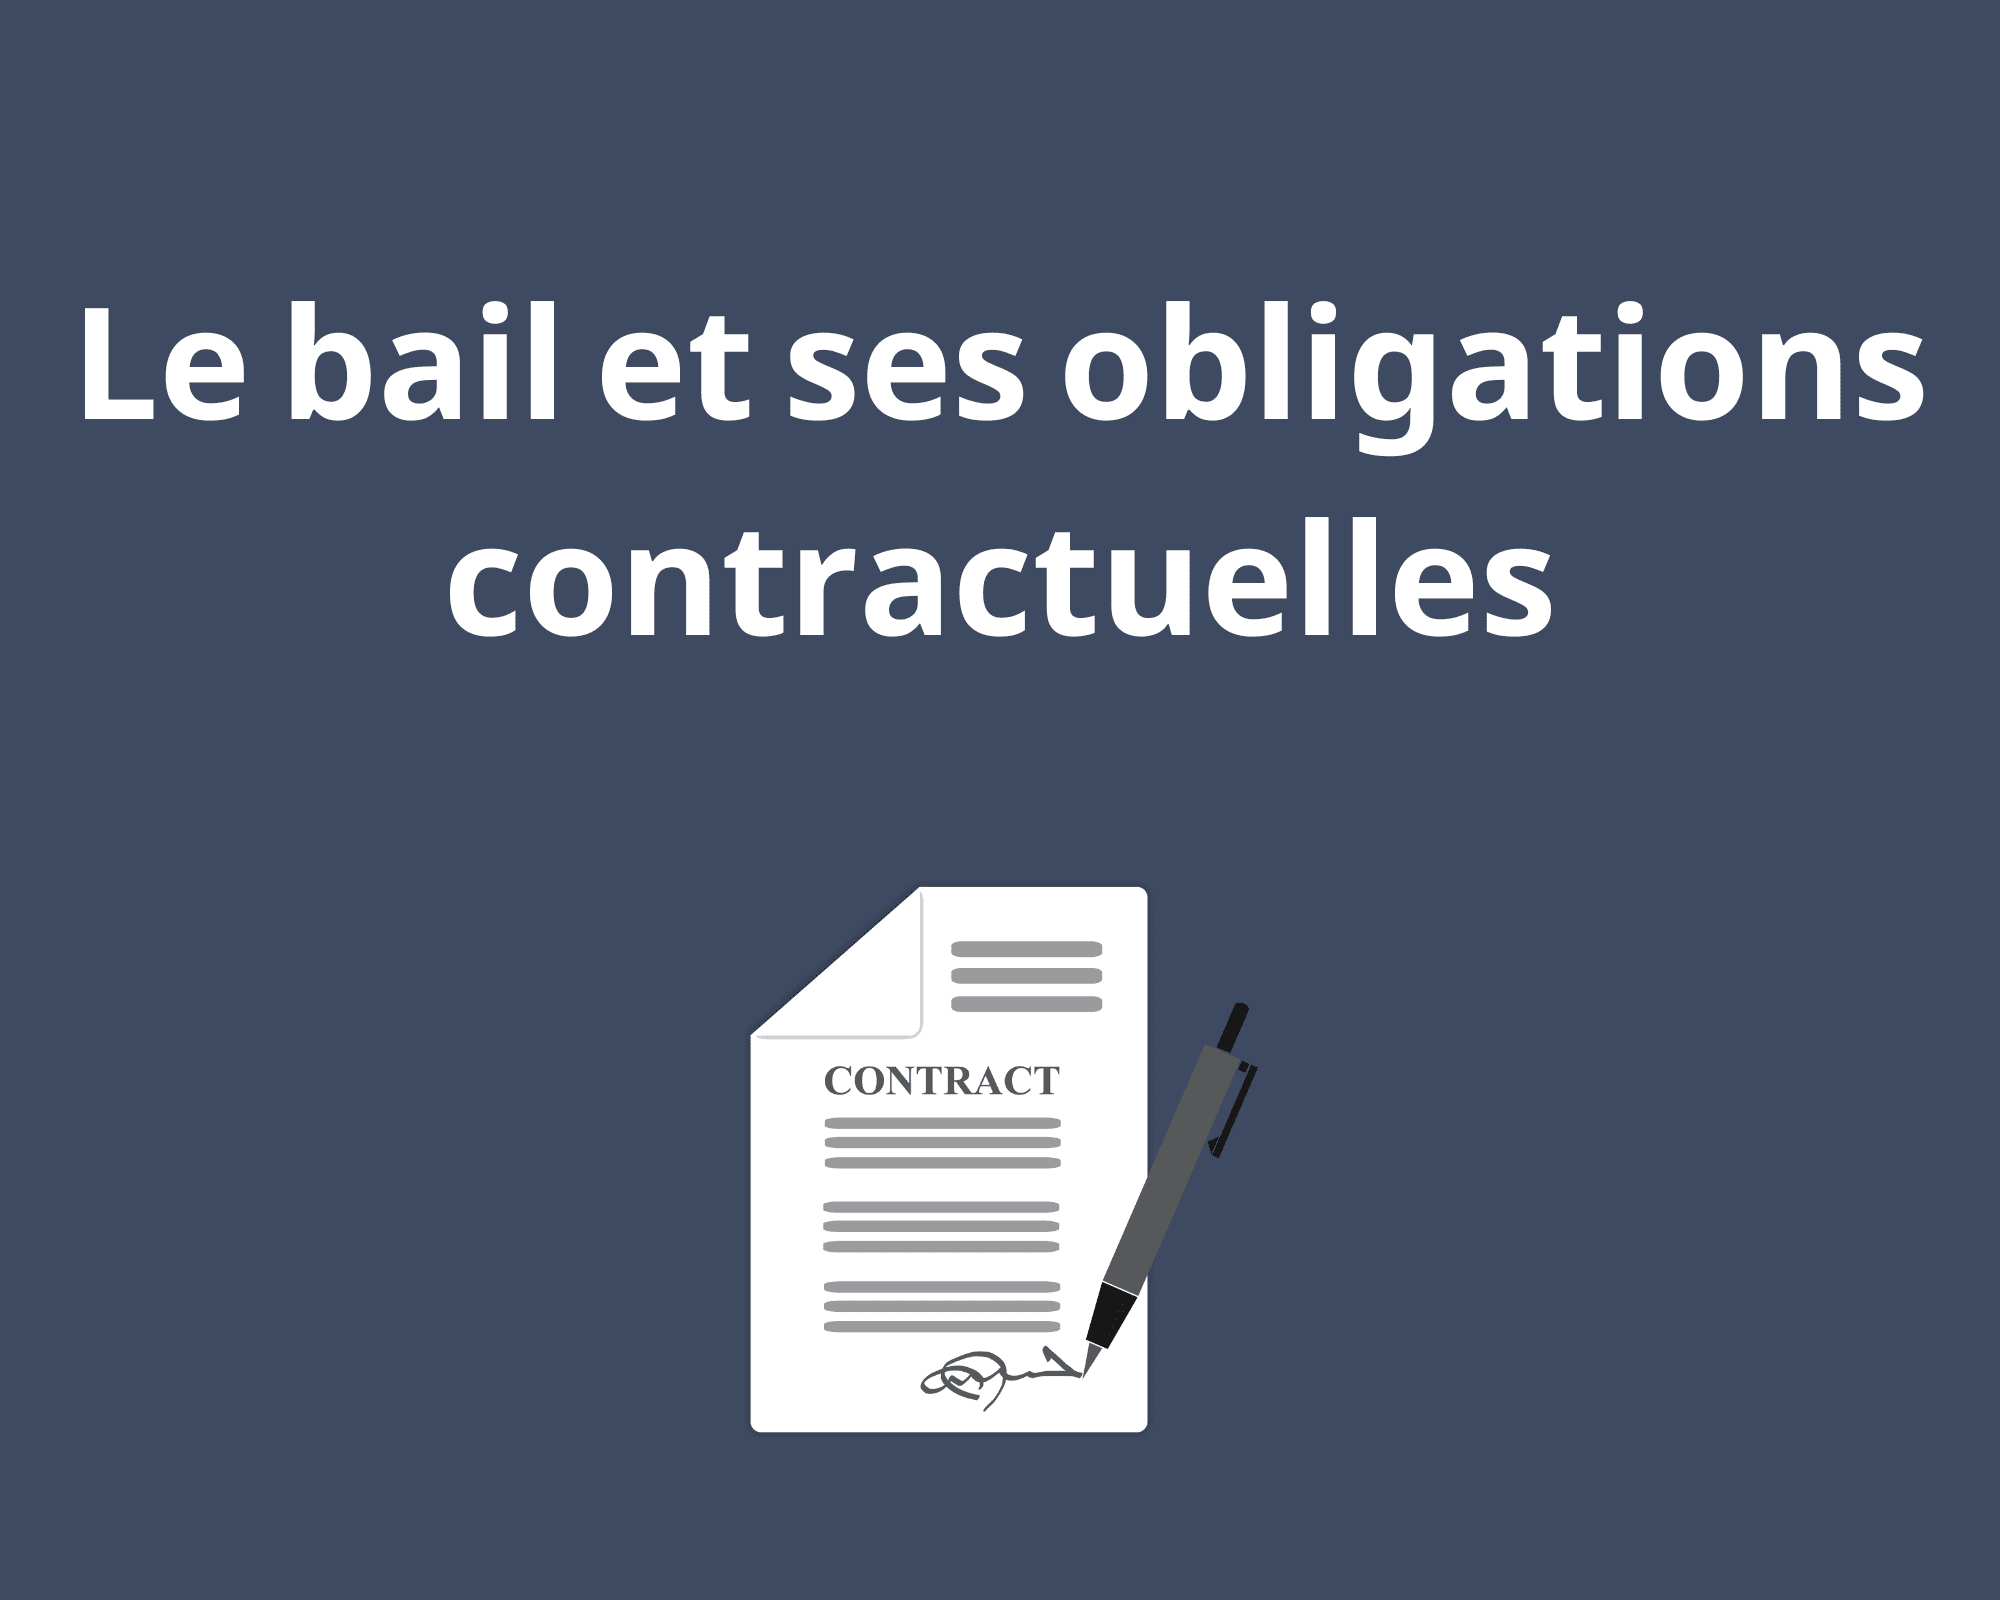 Le bail et les obligations contractuelles - Équipe Lavoie²